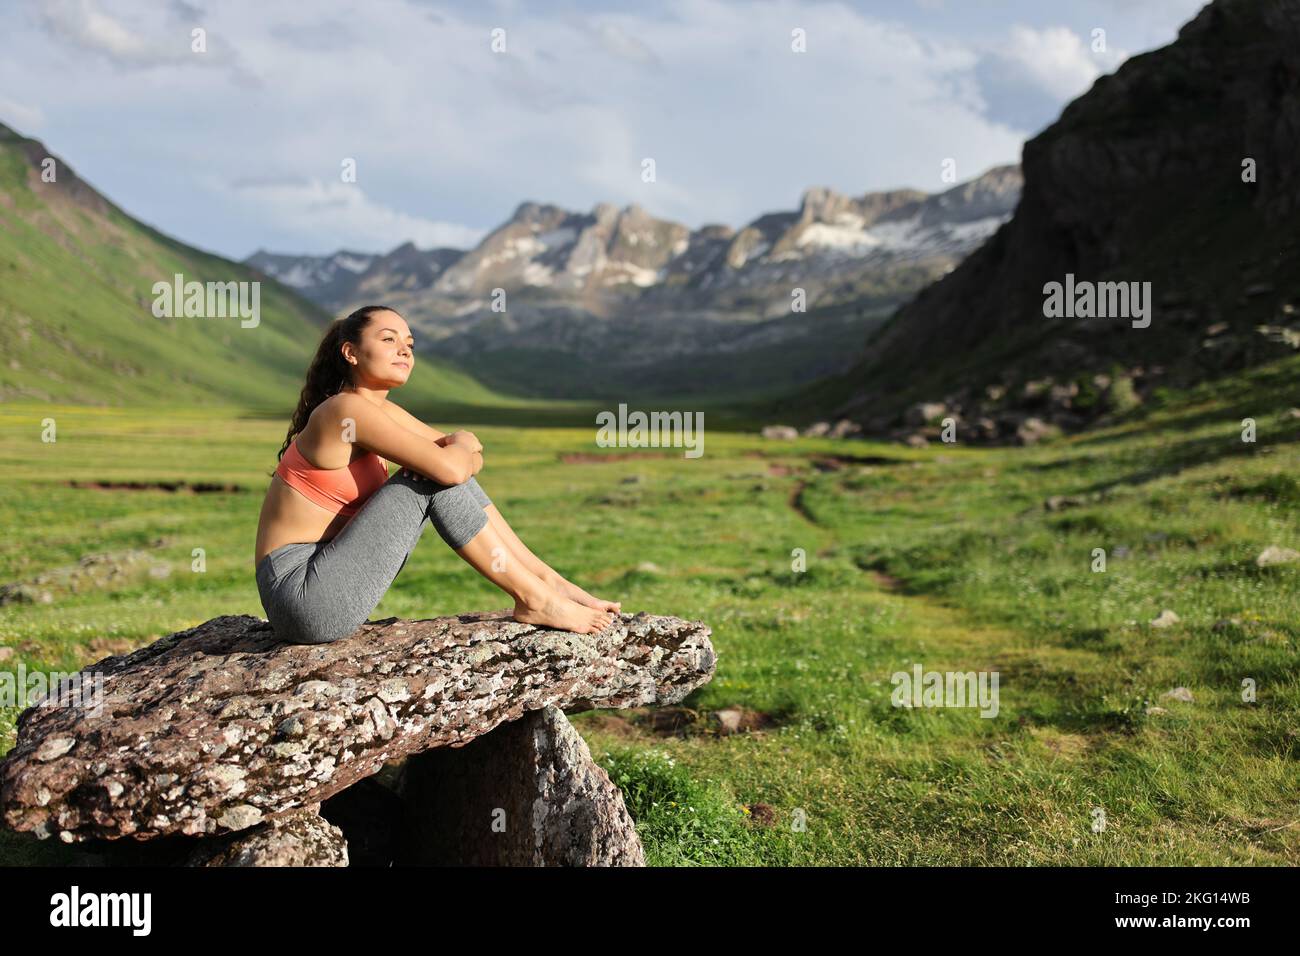 Sportlerin, die sich auf einem Dolmen ausruht und die Aussicht auf den Berg betrachtet Stockfoto